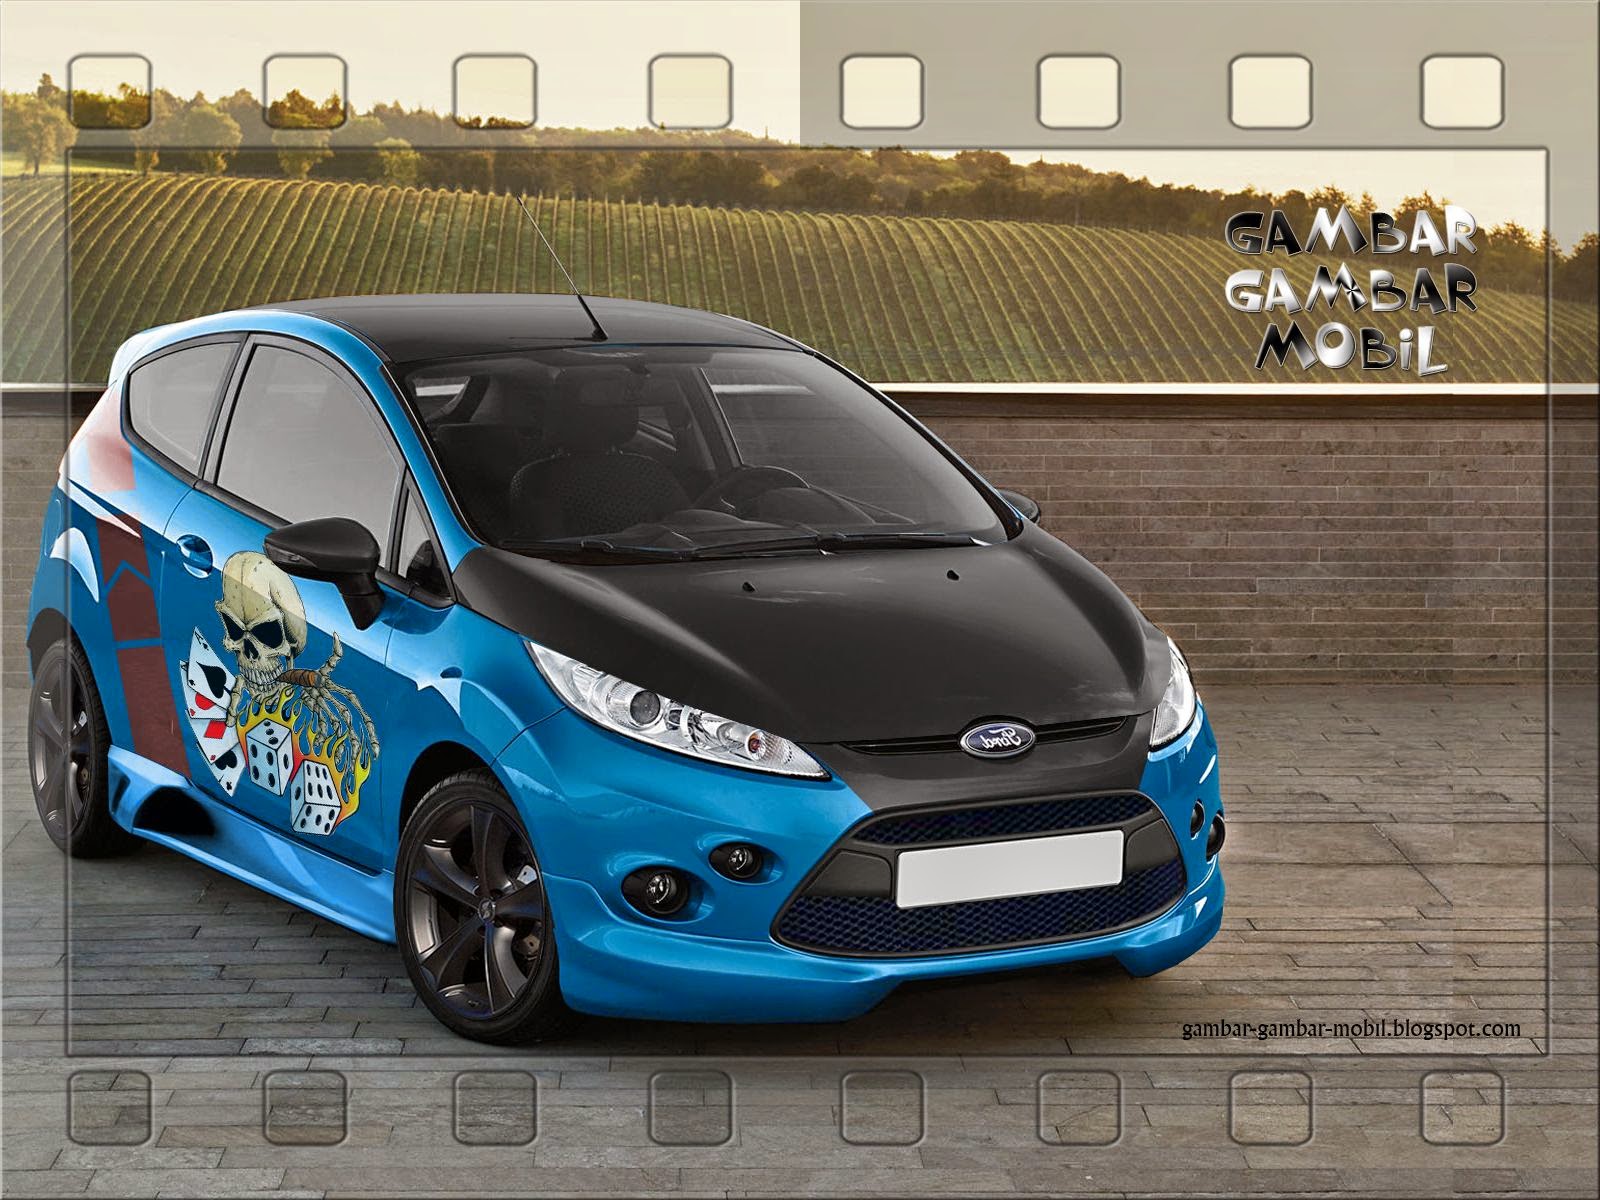 Gambar Modifikasi Mobil Ford Fiesta Terbaru Dan Terupdate Galeri